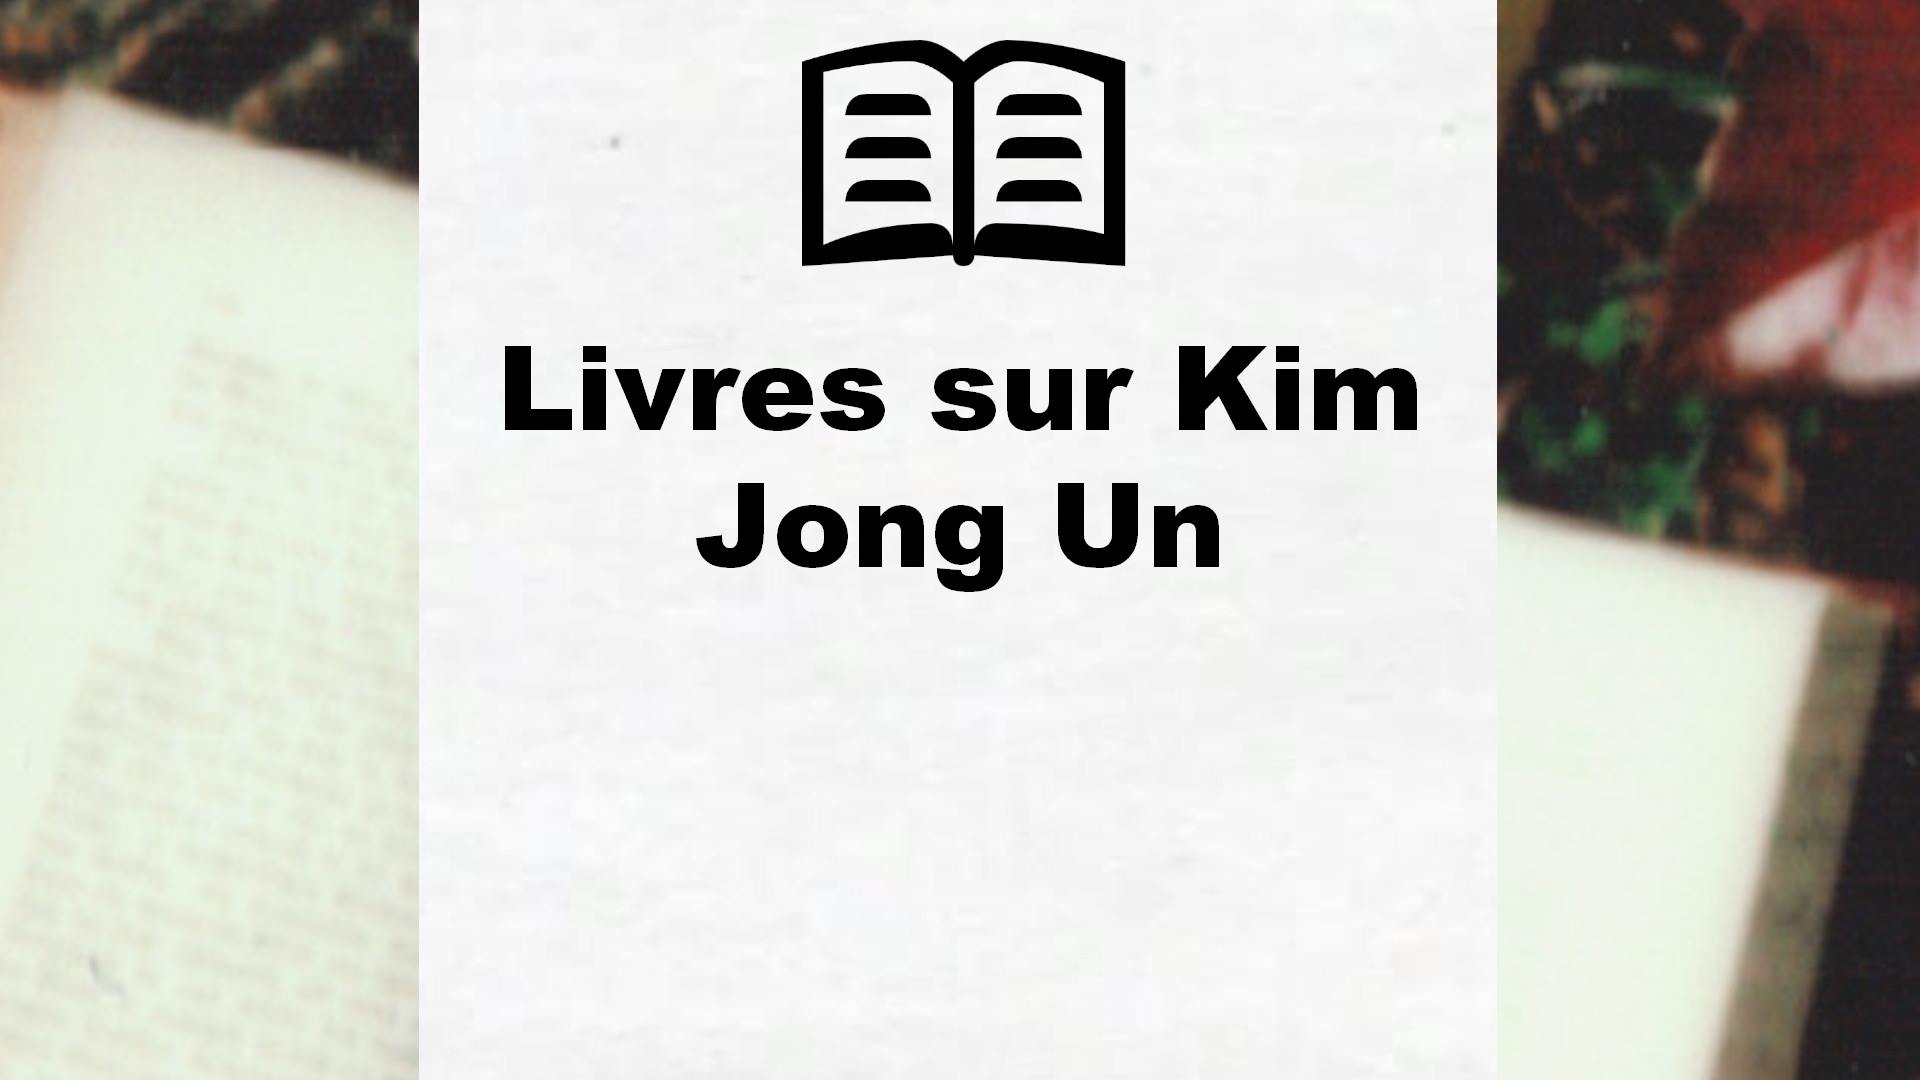 Livres sur Kim Jong Un